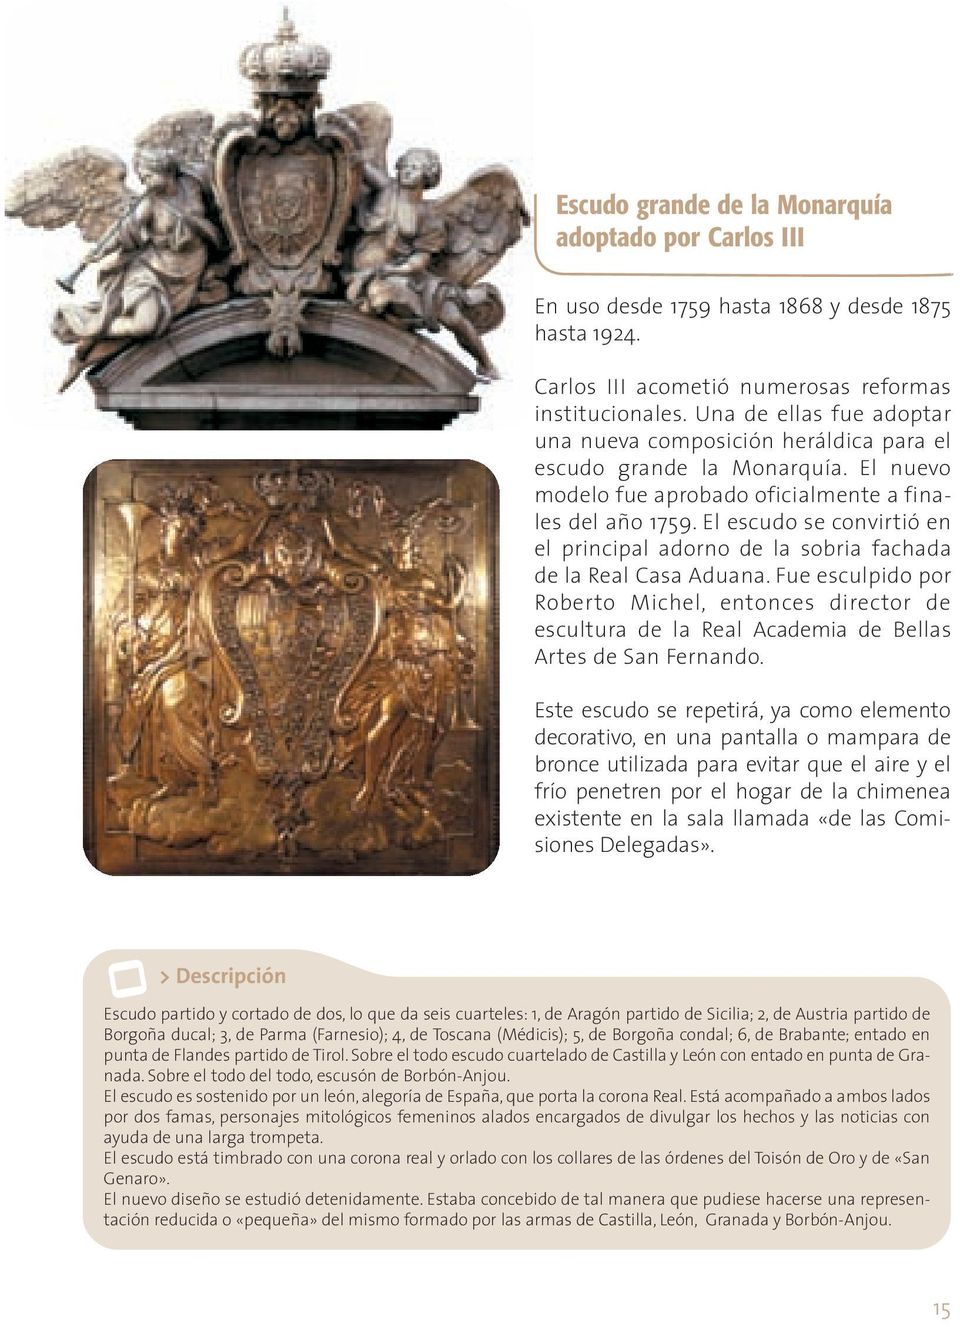 El escudo se convirtió en el principal adorno de la sobria fachada de la Real Casa Aduana.